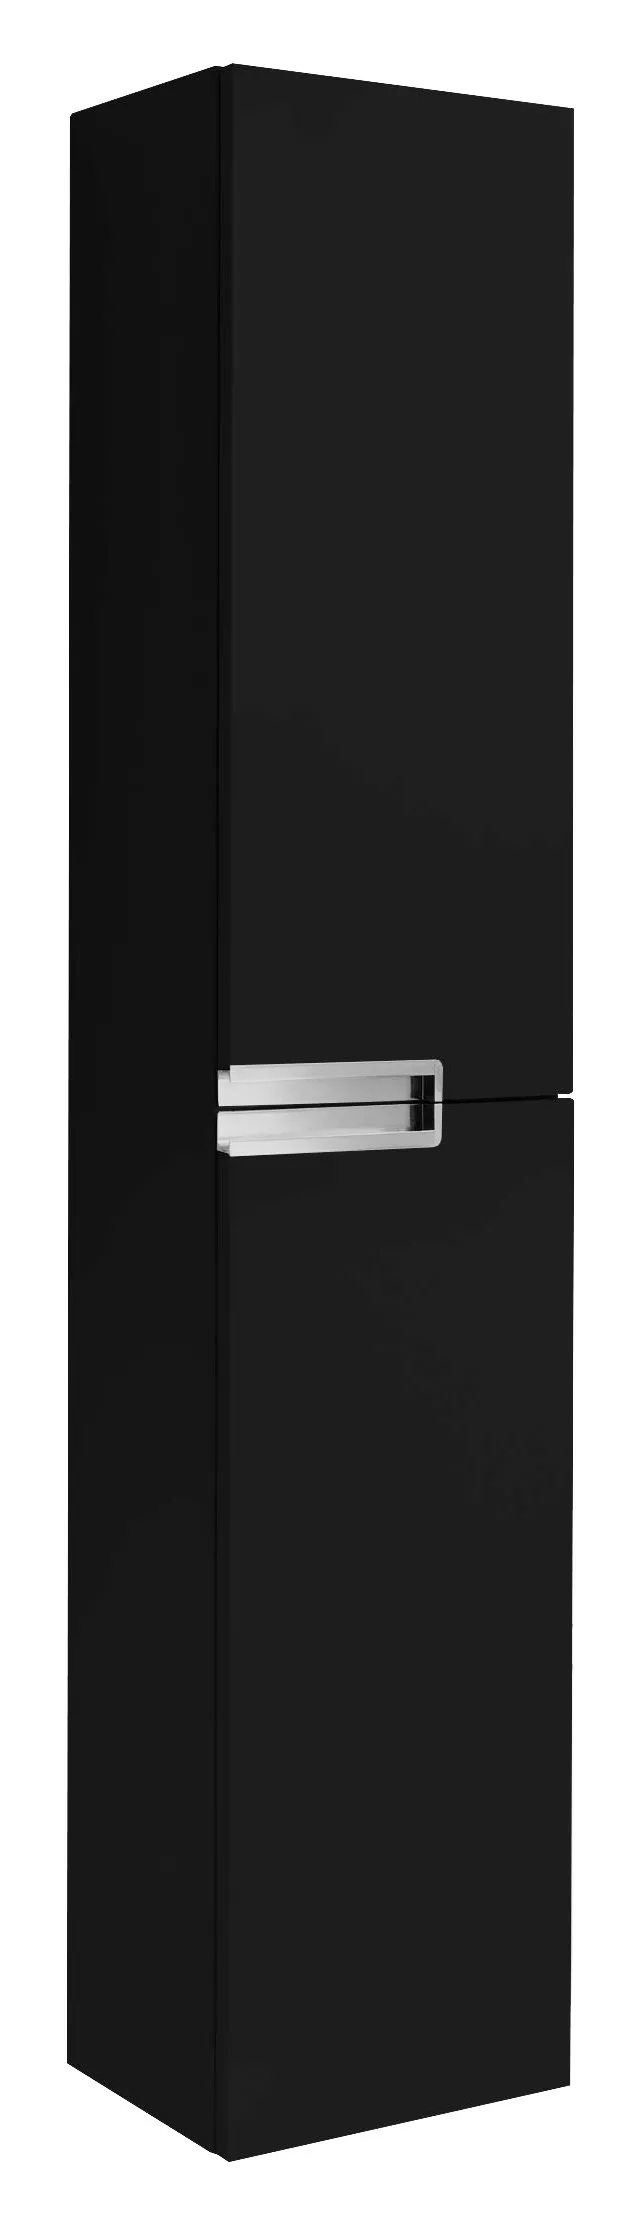 Шкаф-пенал Roca Victoria Nord Black Edition 30 см (ZRU9000095), размер 30, цвет черный - фото 1